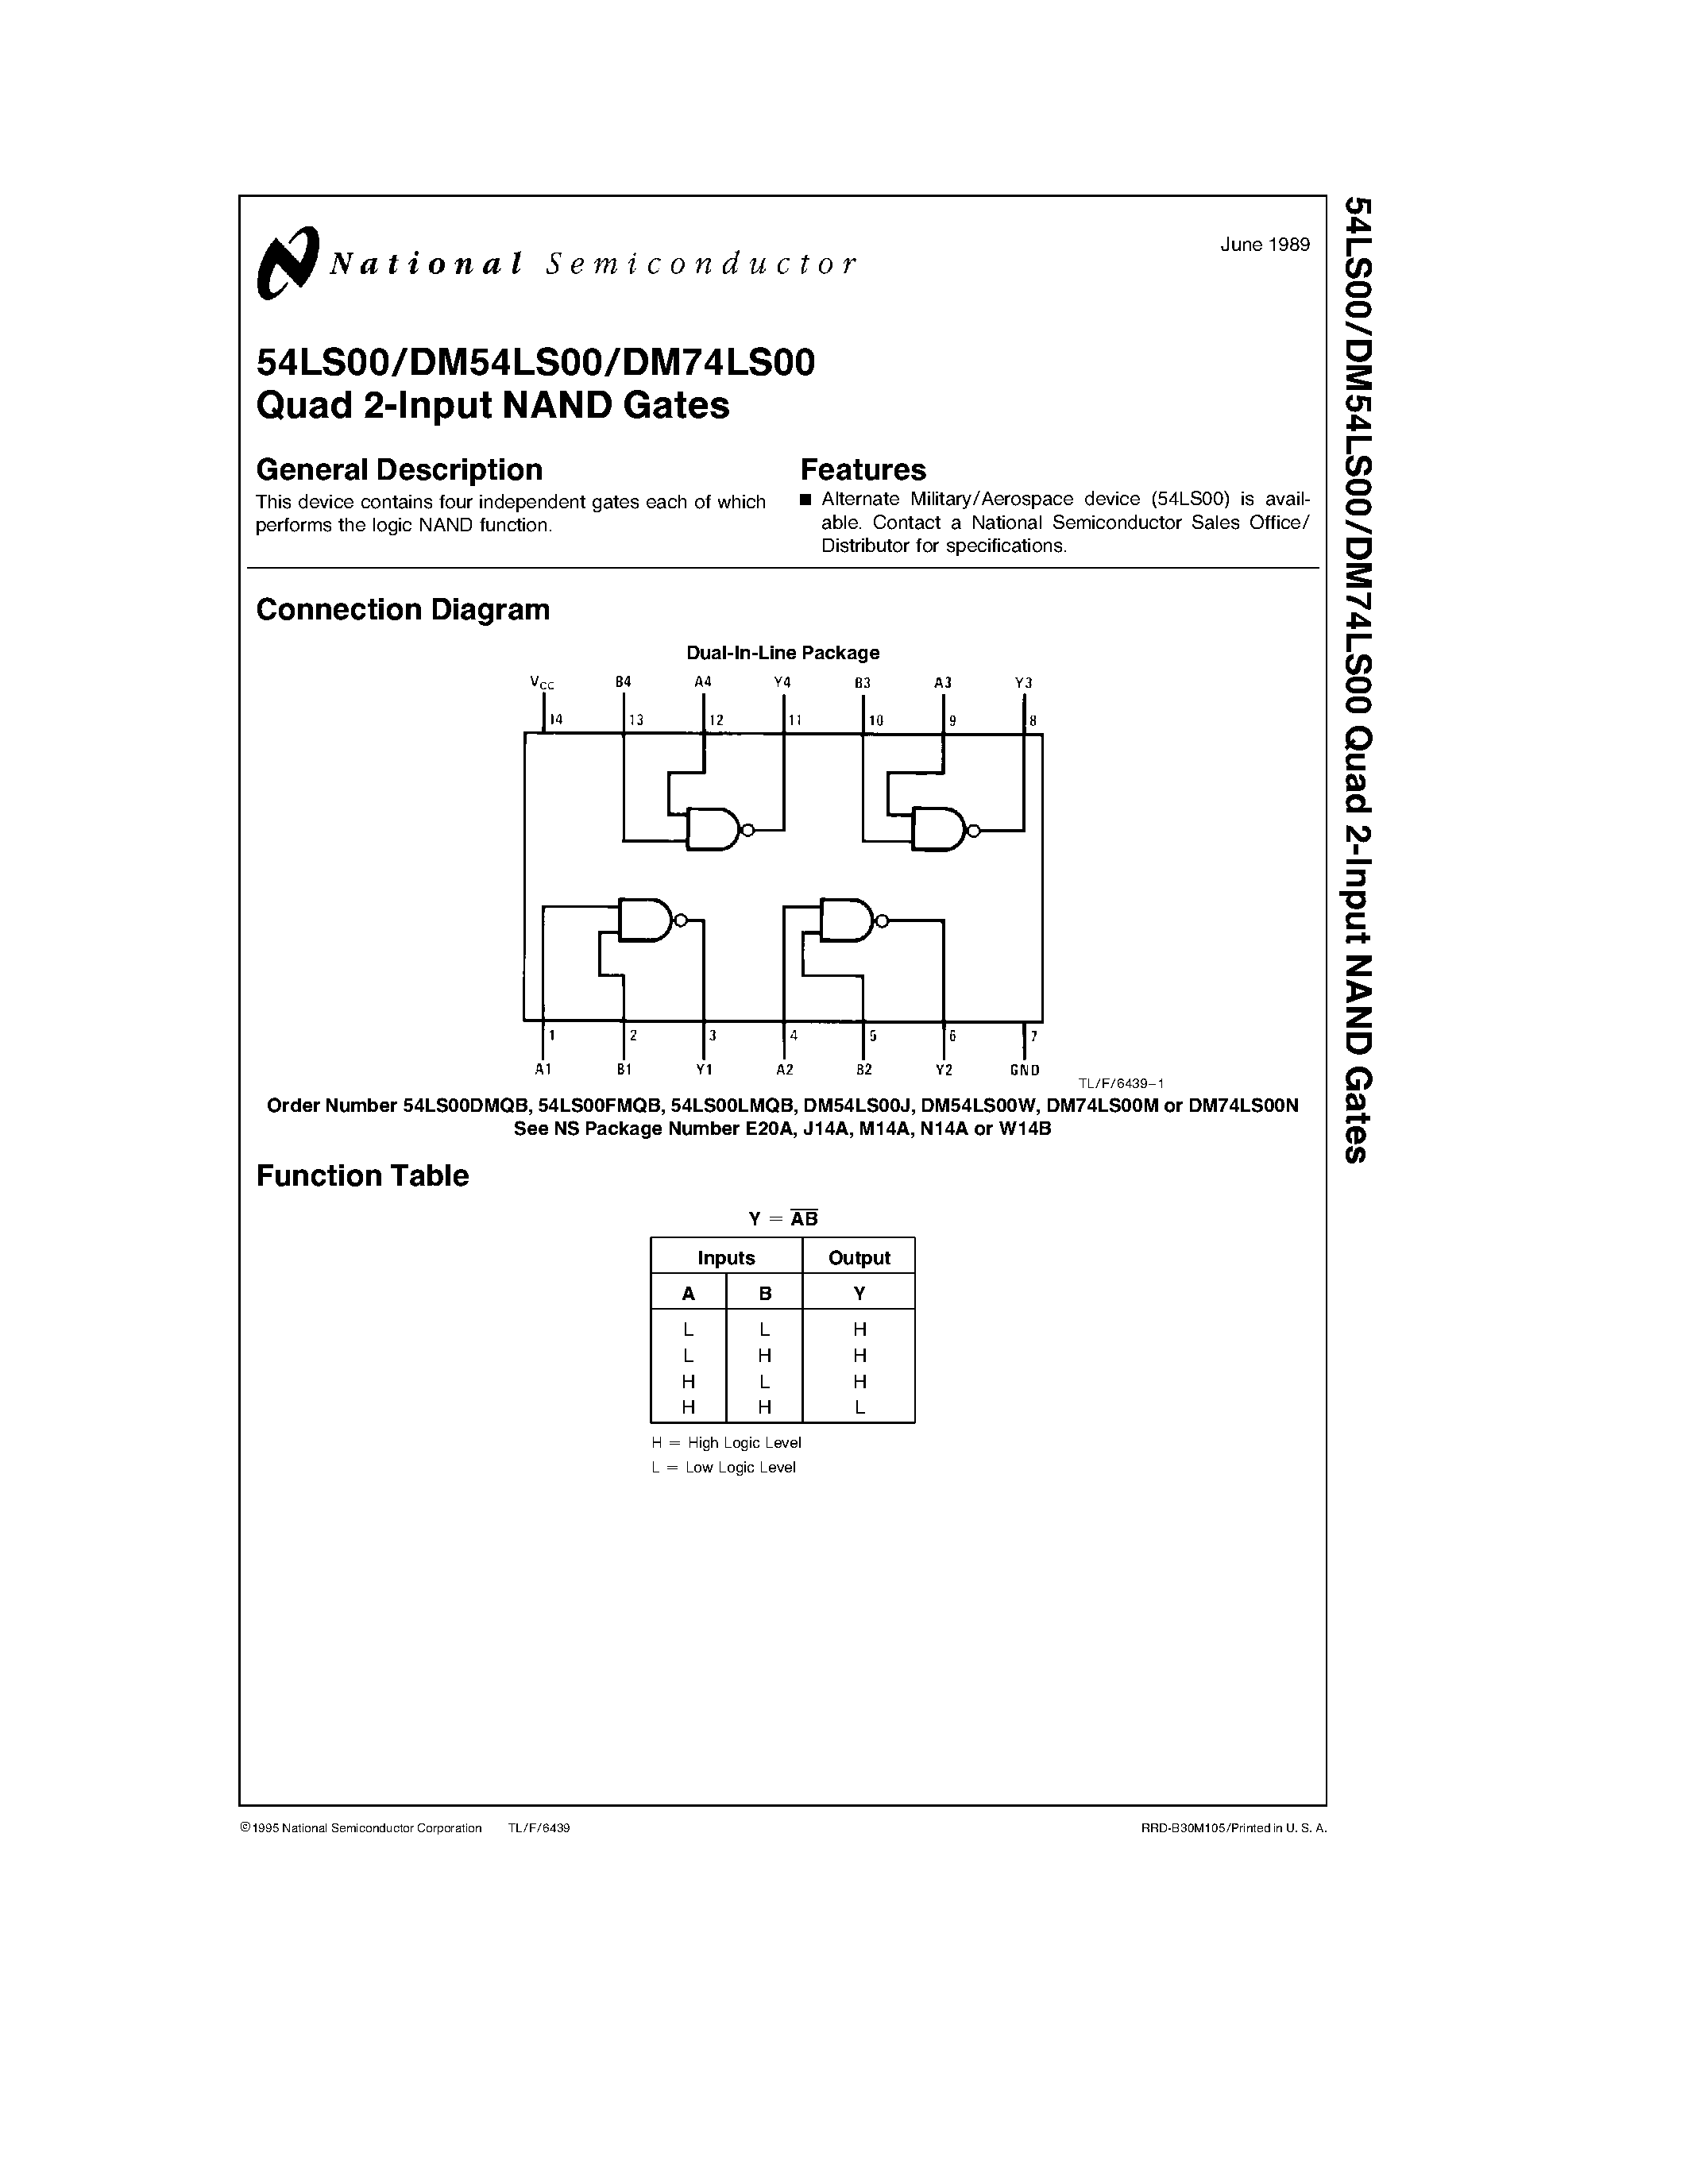 Даташит DM74LS00E - Quad 2-Input NAND Gates страница 1